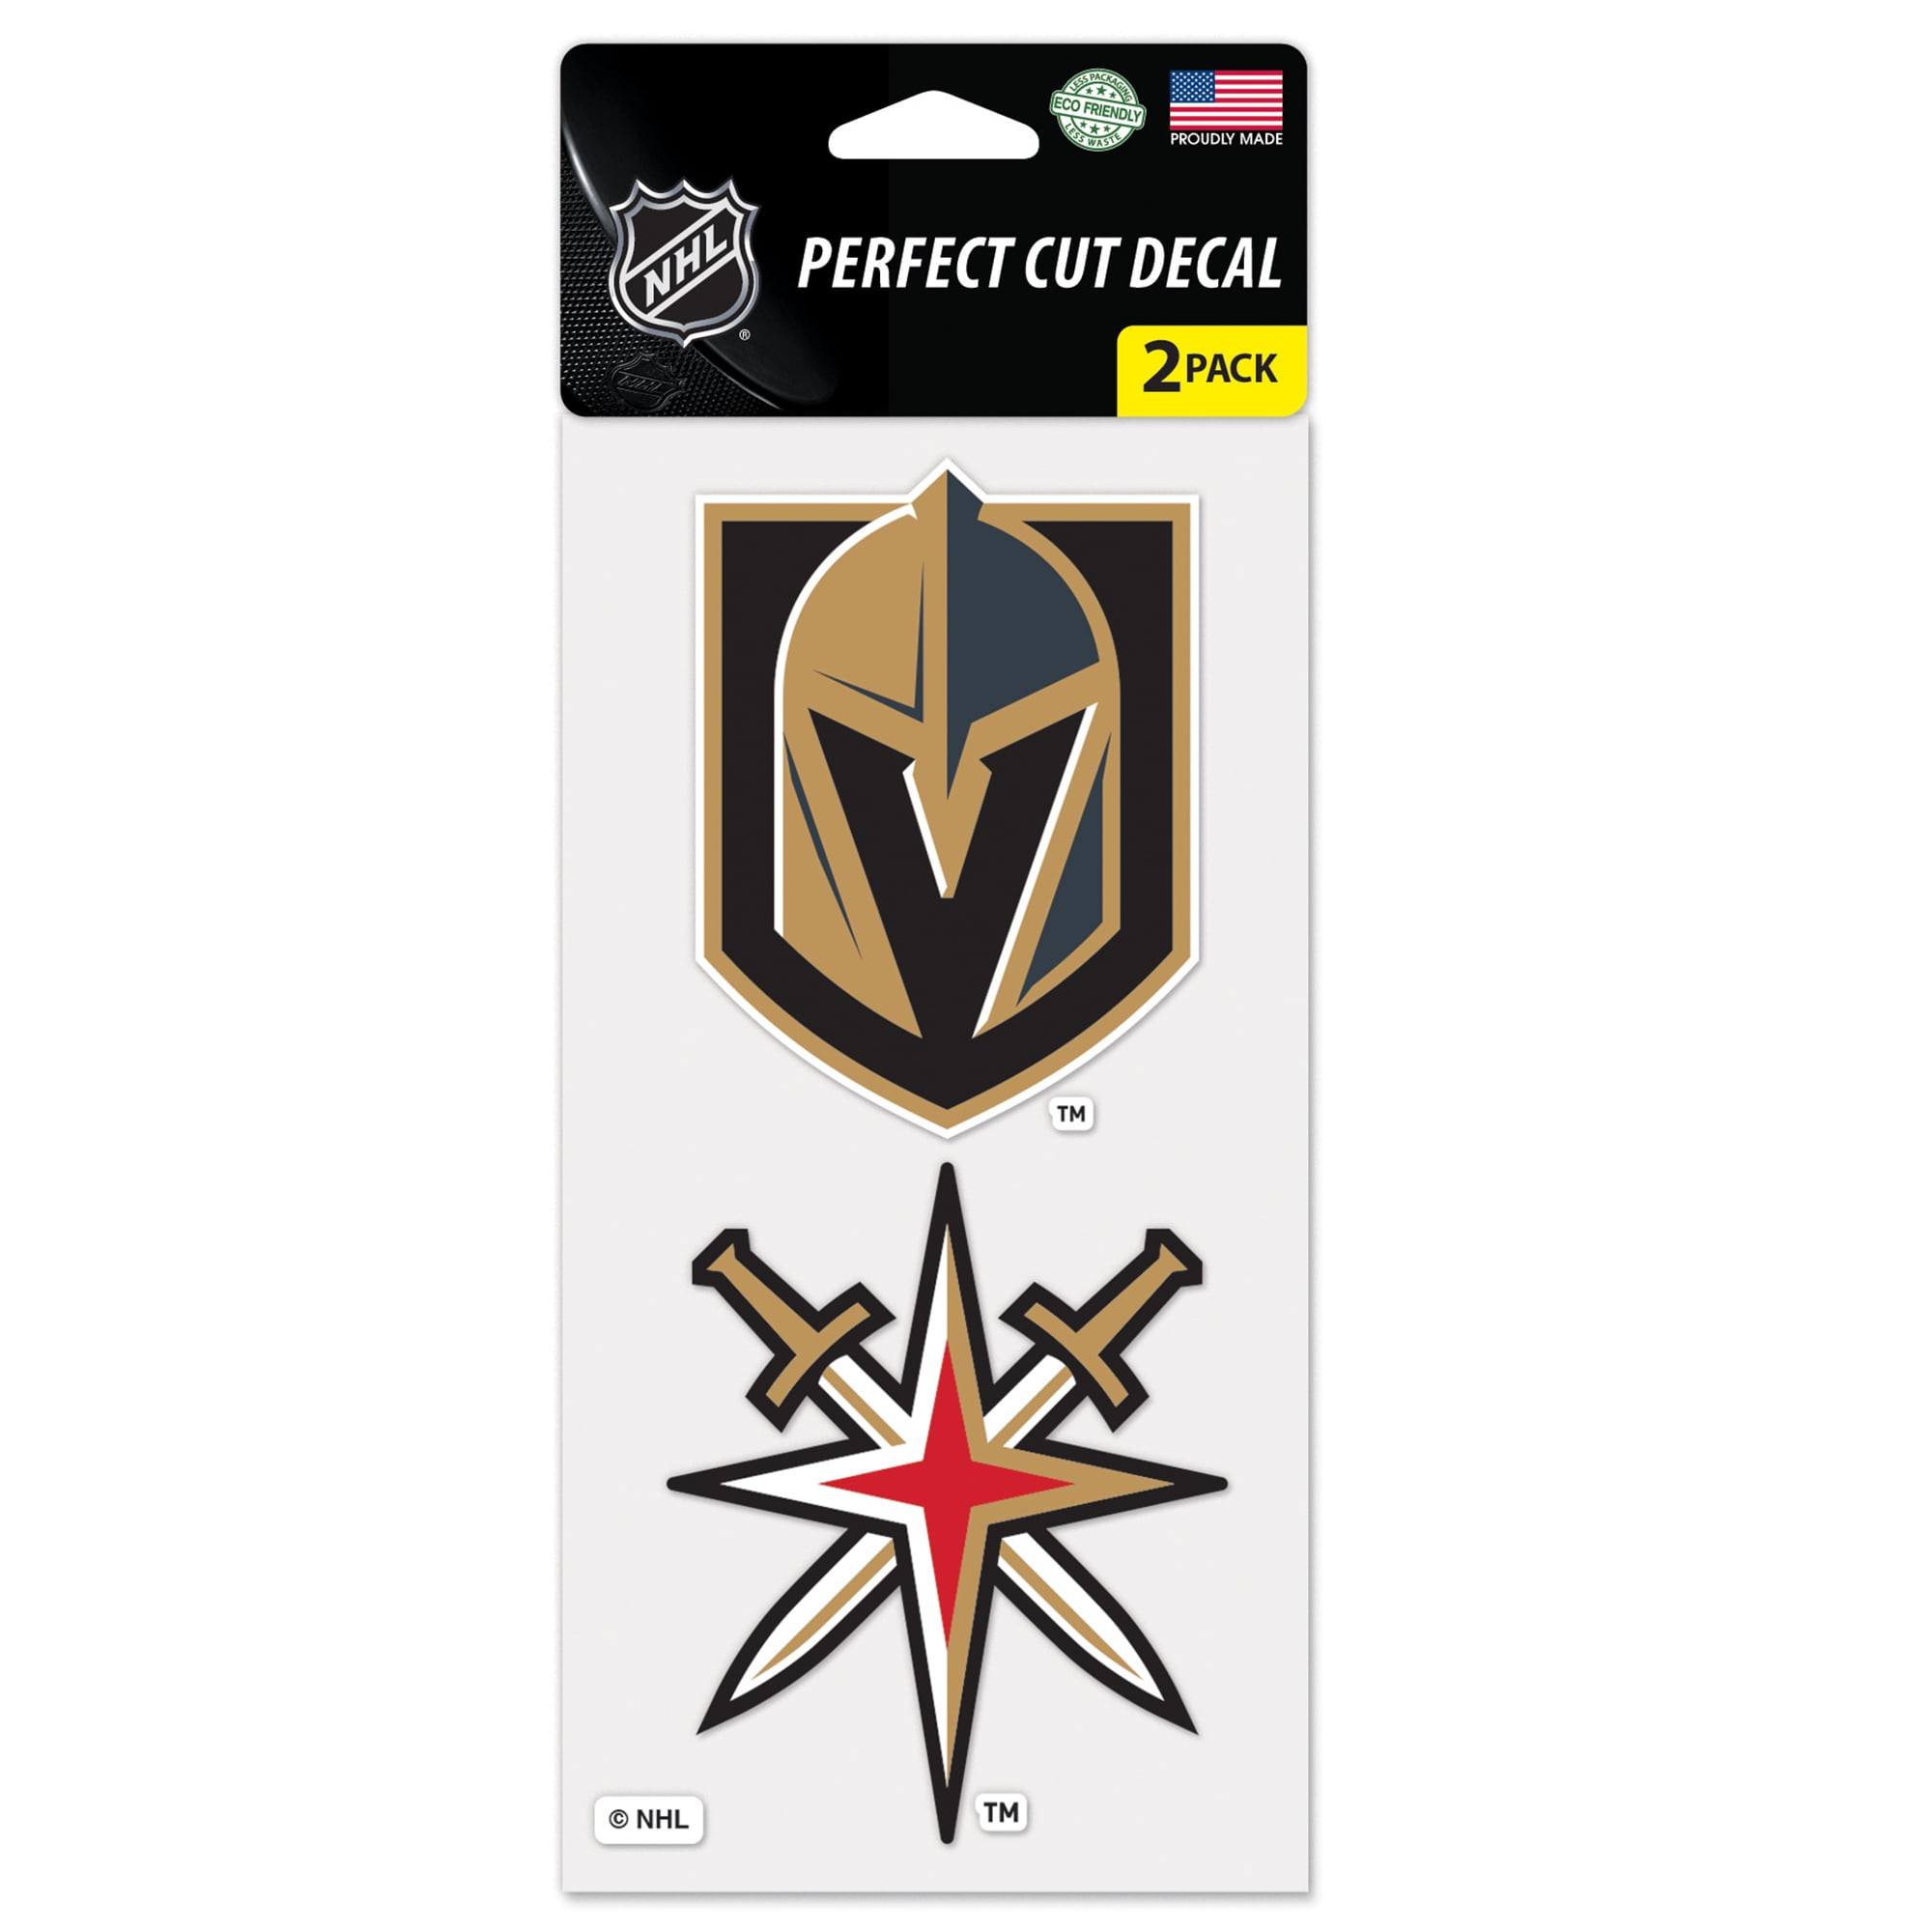 Vegas Sticks Sport Car Bumper Sticker Decal 5 X 4 hotprint Golden Knights Hockey 